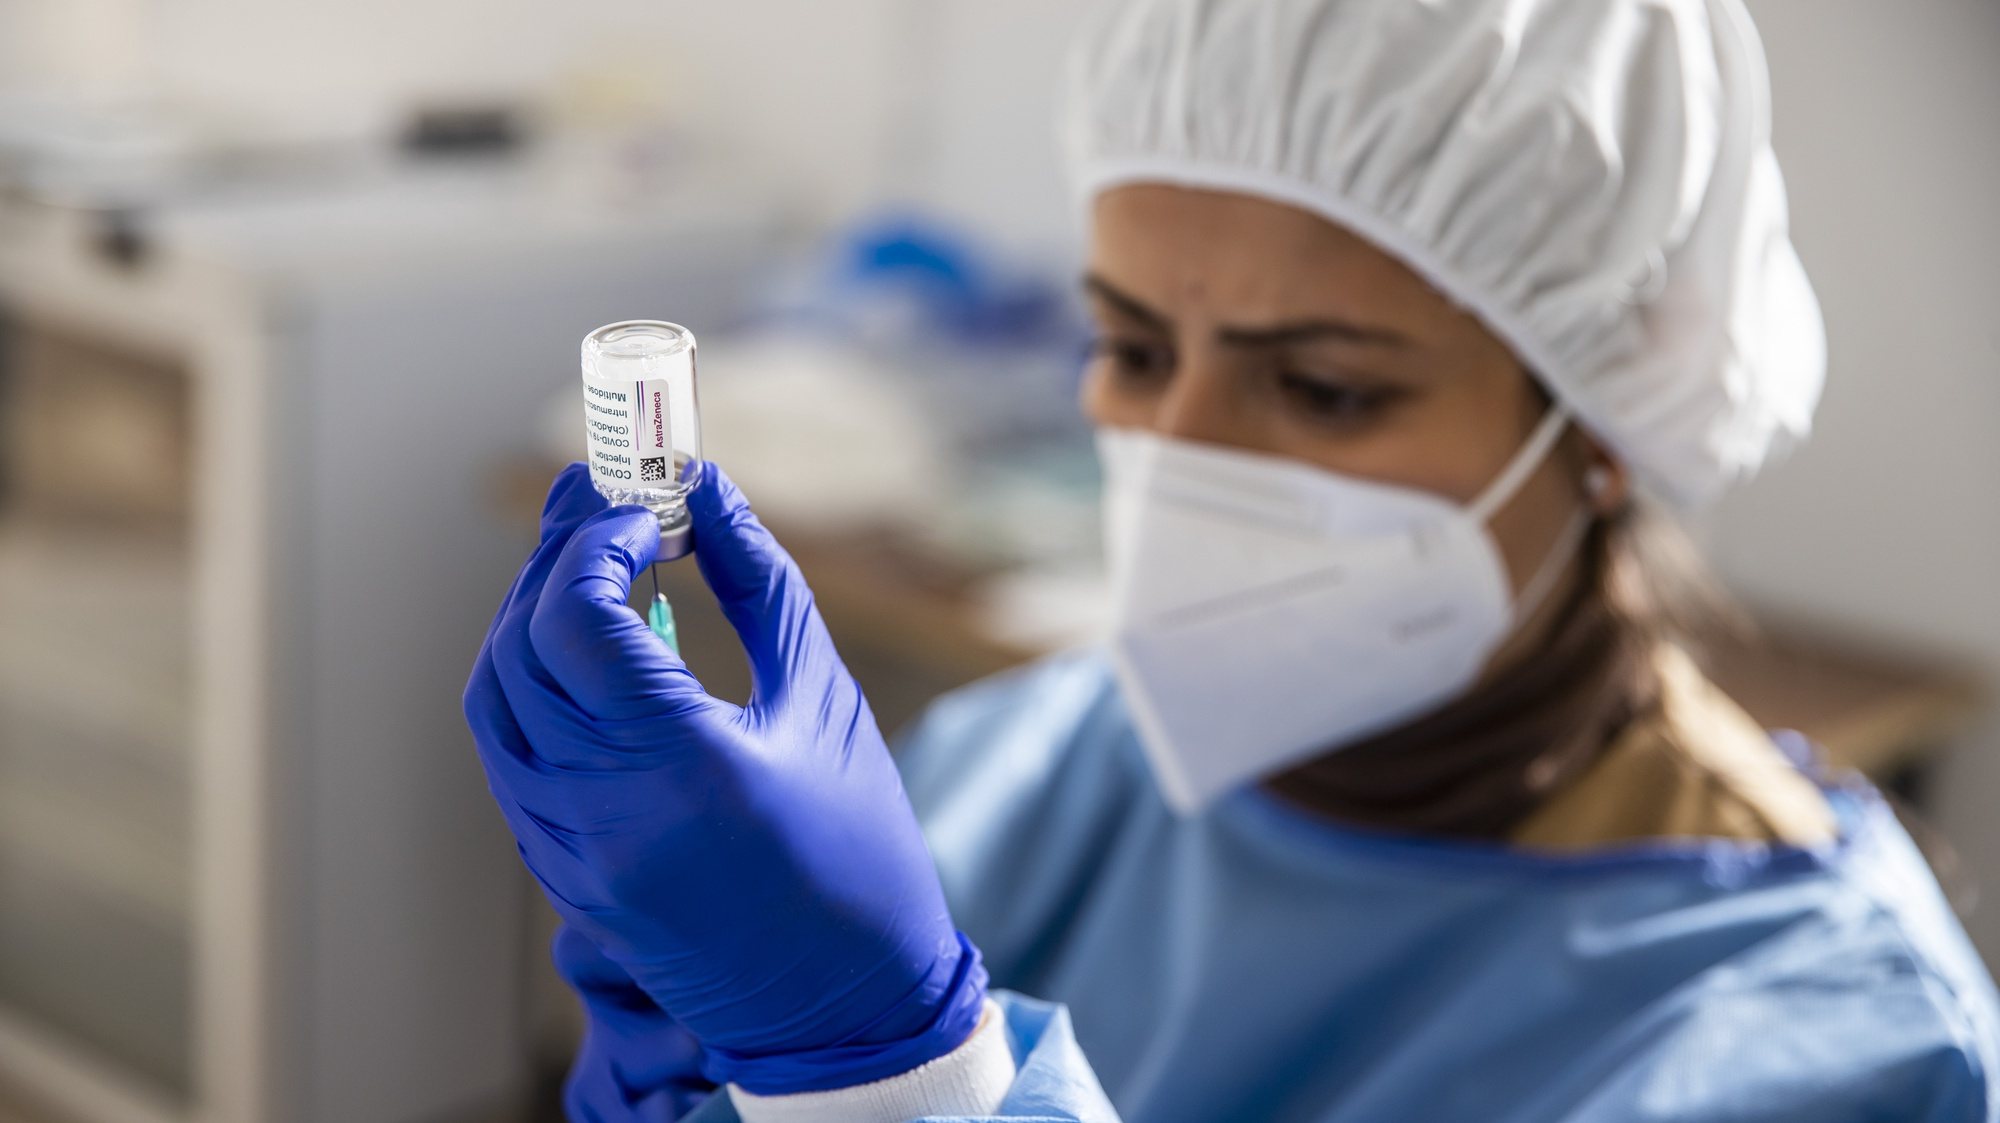 Uma enfermeira prepara uma vacina contra a Covid19, no Quartel de Conde de Lipe, em Lisboa, 13 de fevereiro de 2021. JOSÉ SENA GOULÃO/LUSA